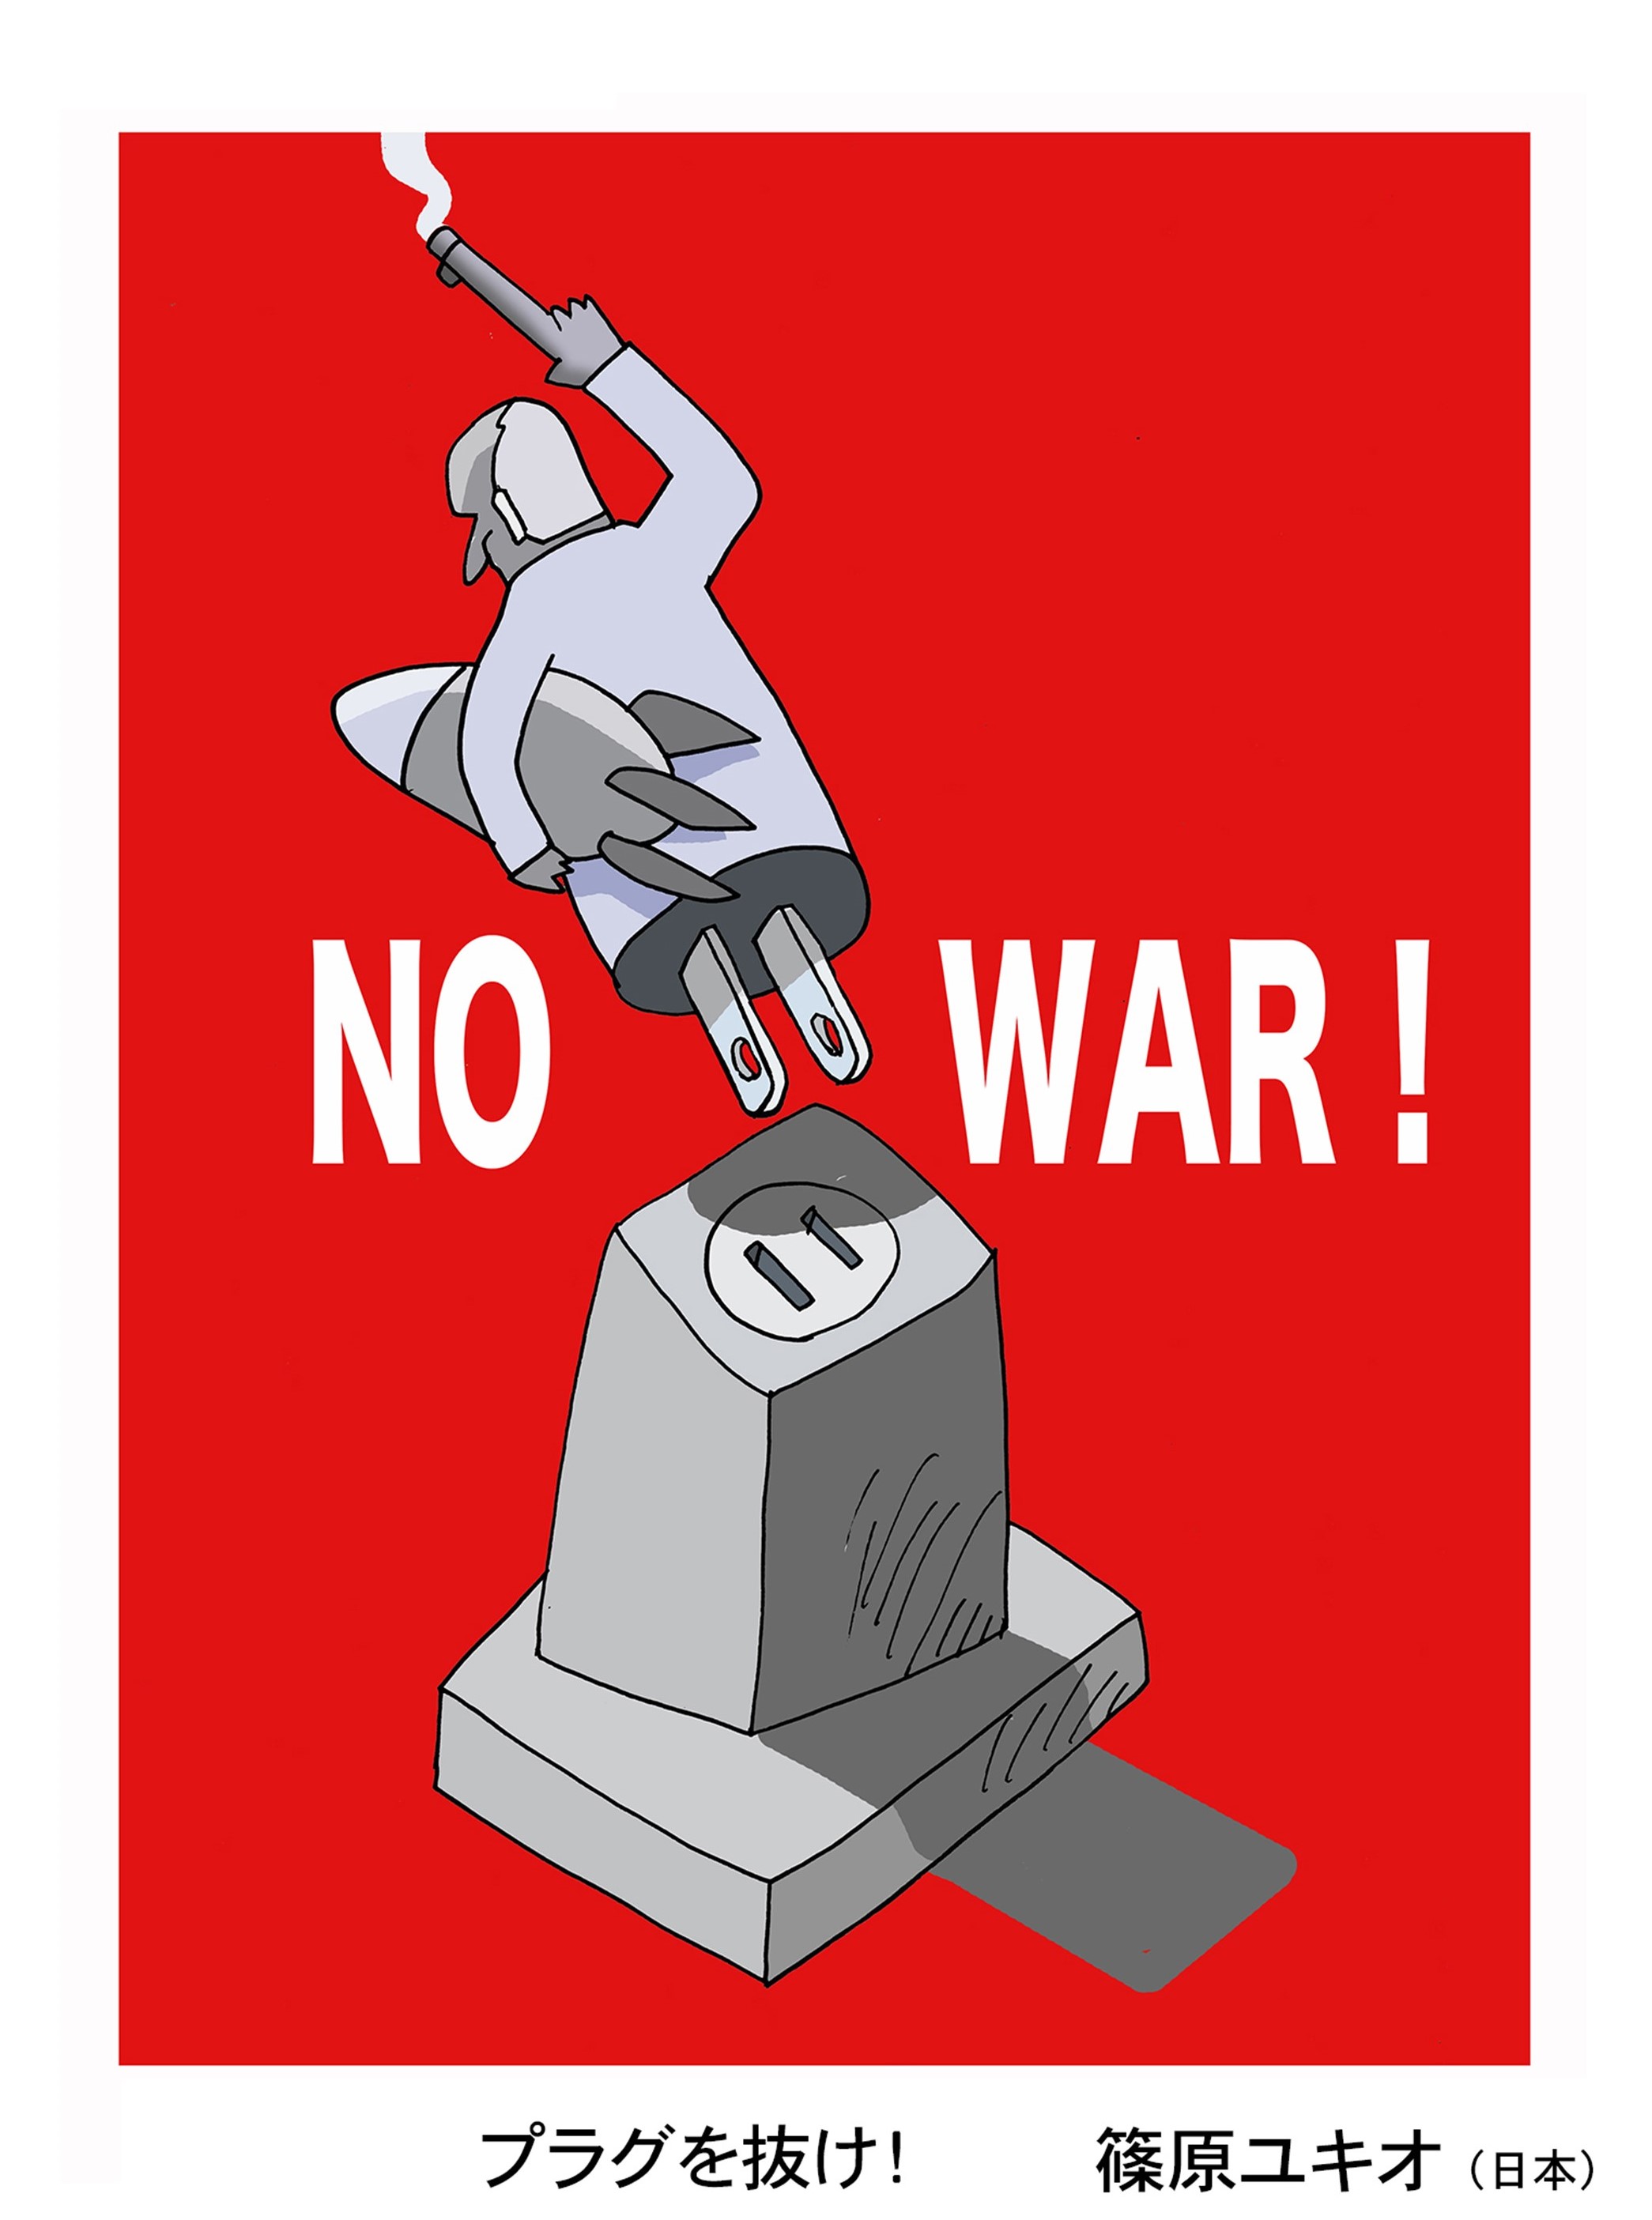 世界の漫画家からのメッセージ 国際平和漫画展 Newscast